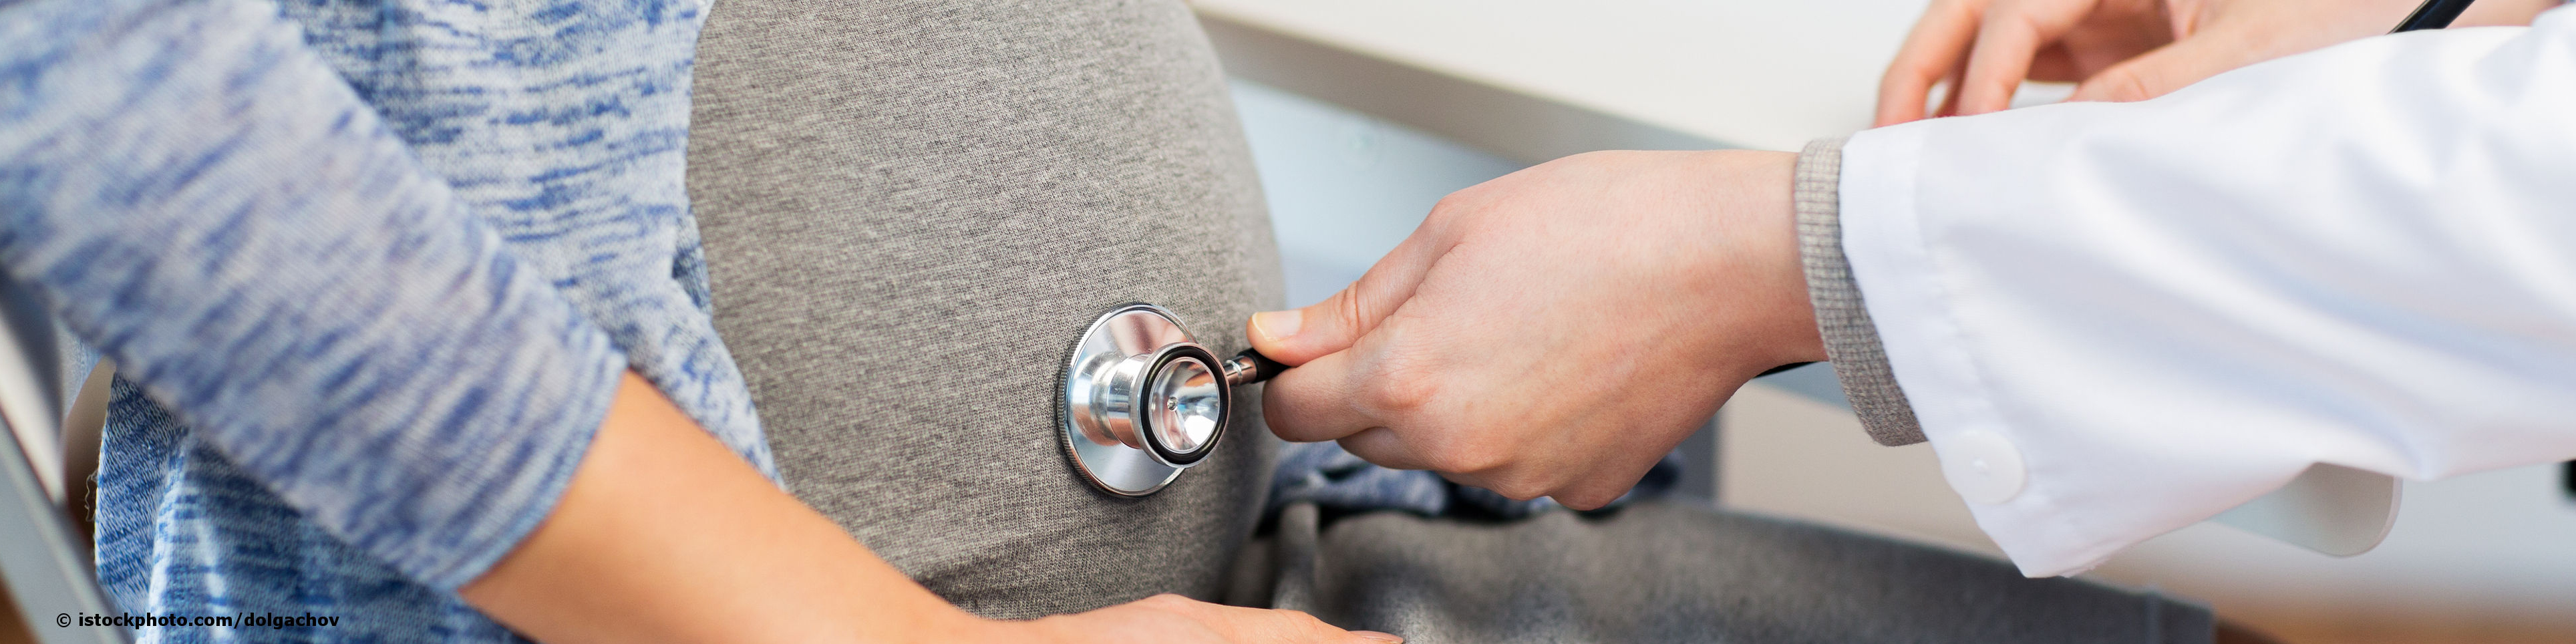 Ein bei docinsider registrierter Frauenarzt untersucht eine schwangere Frau, indem er ihren Babybauch abhört.